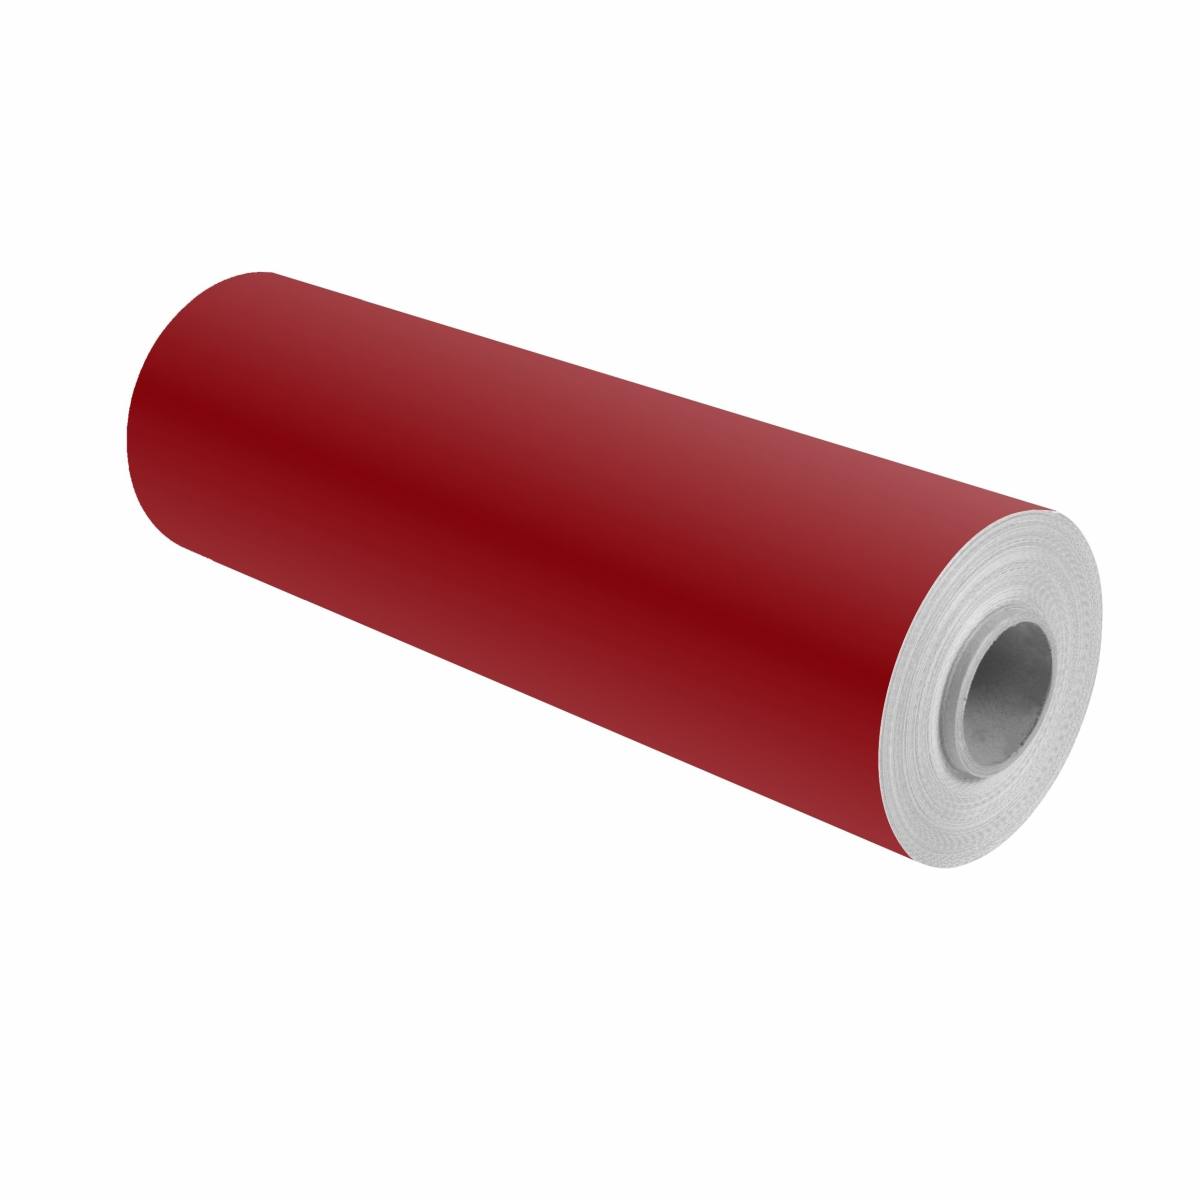 3M Scotchcal pellicola colorata 100-23/5 rosso rubino 1,22m x 50m